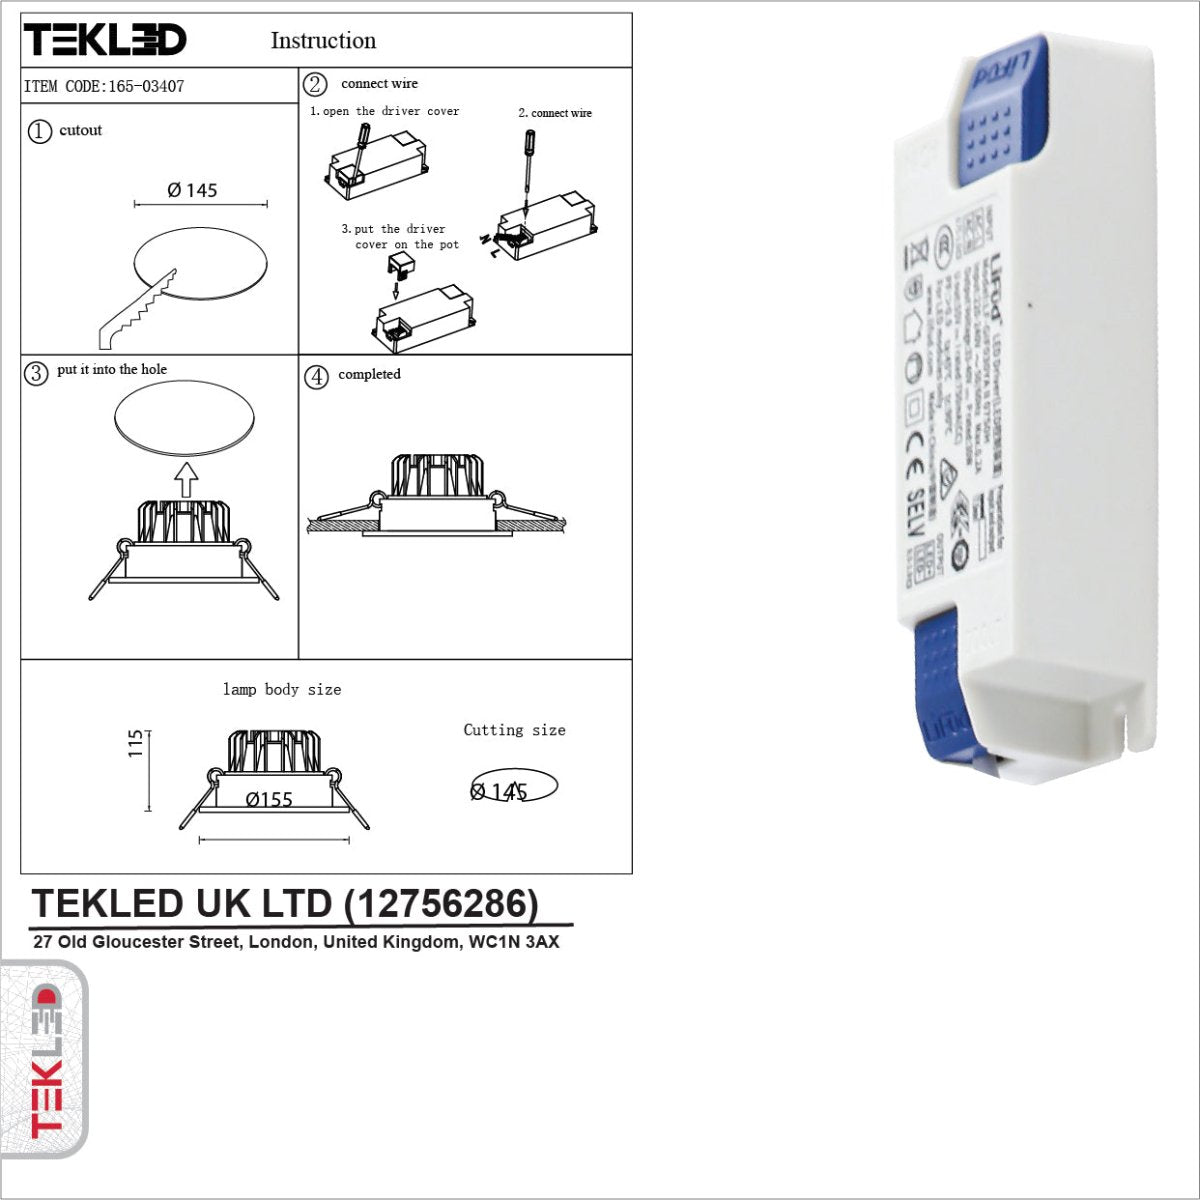 User manual for LED COB Recessed Downlight P1 30W Cool White 4000K White | TEKLED 165-03407